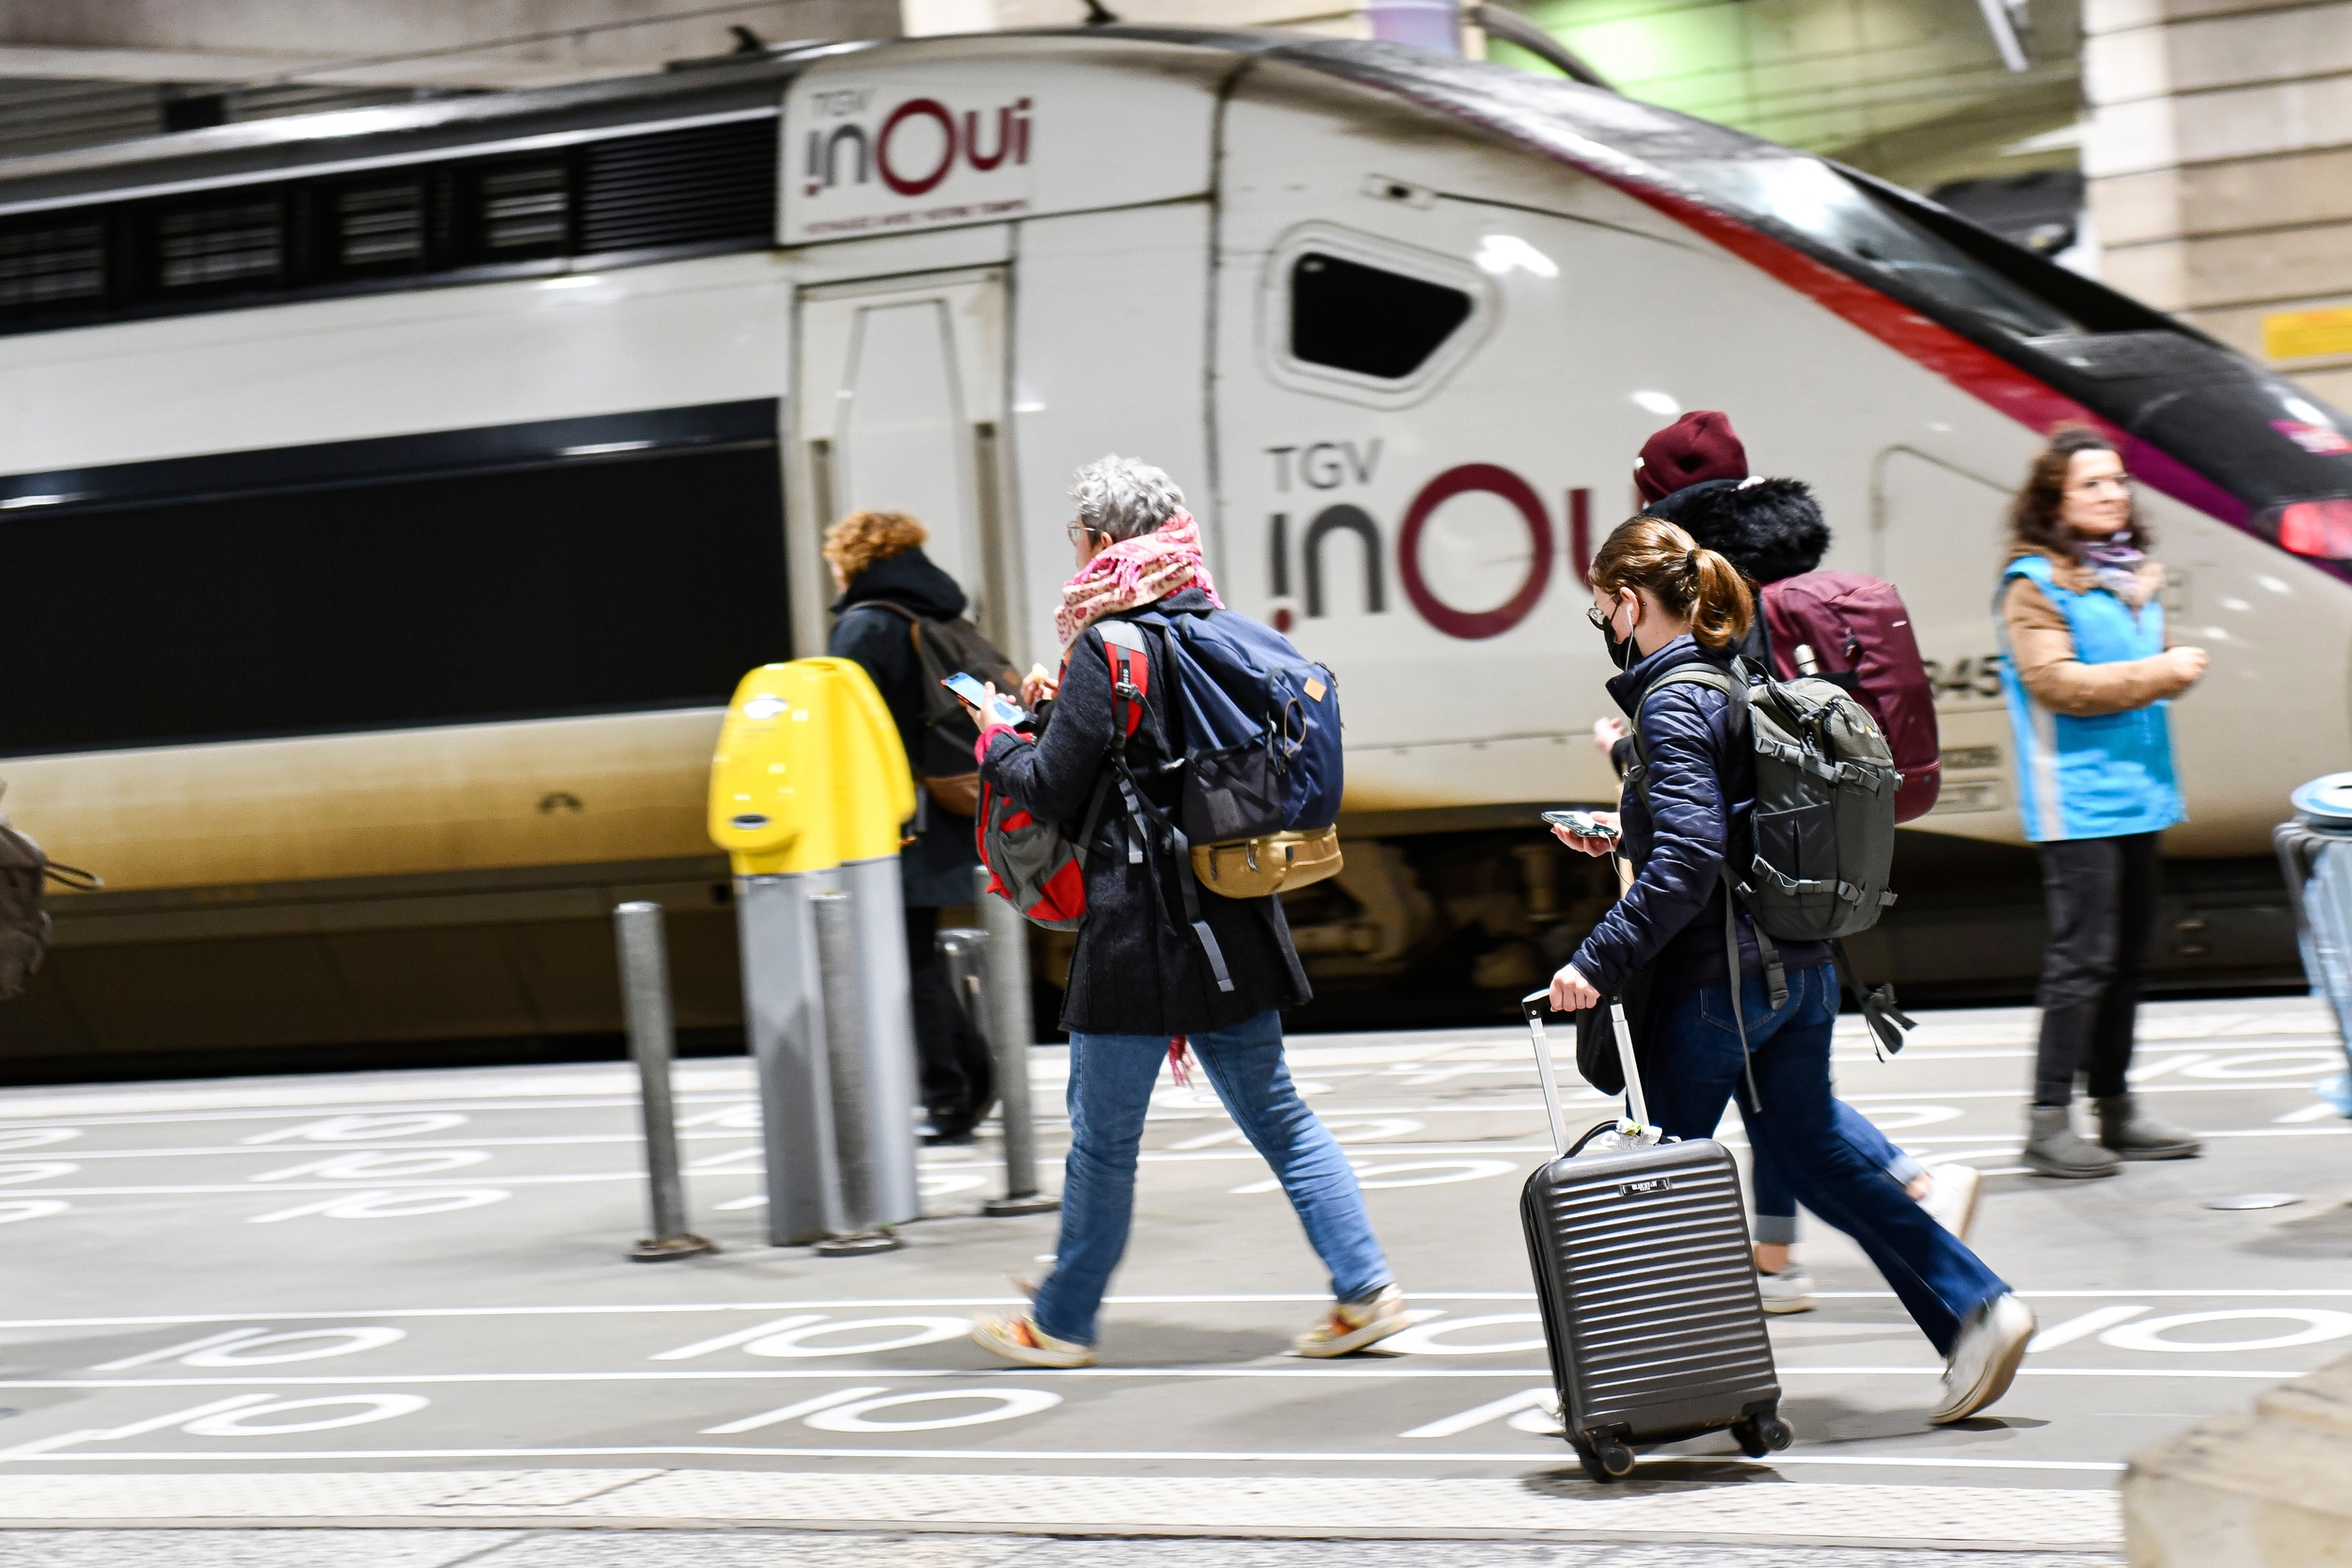 Pour ses TGV, la SNCF aussi, fait son Black Friday, avec 500 000 billets à bas prix